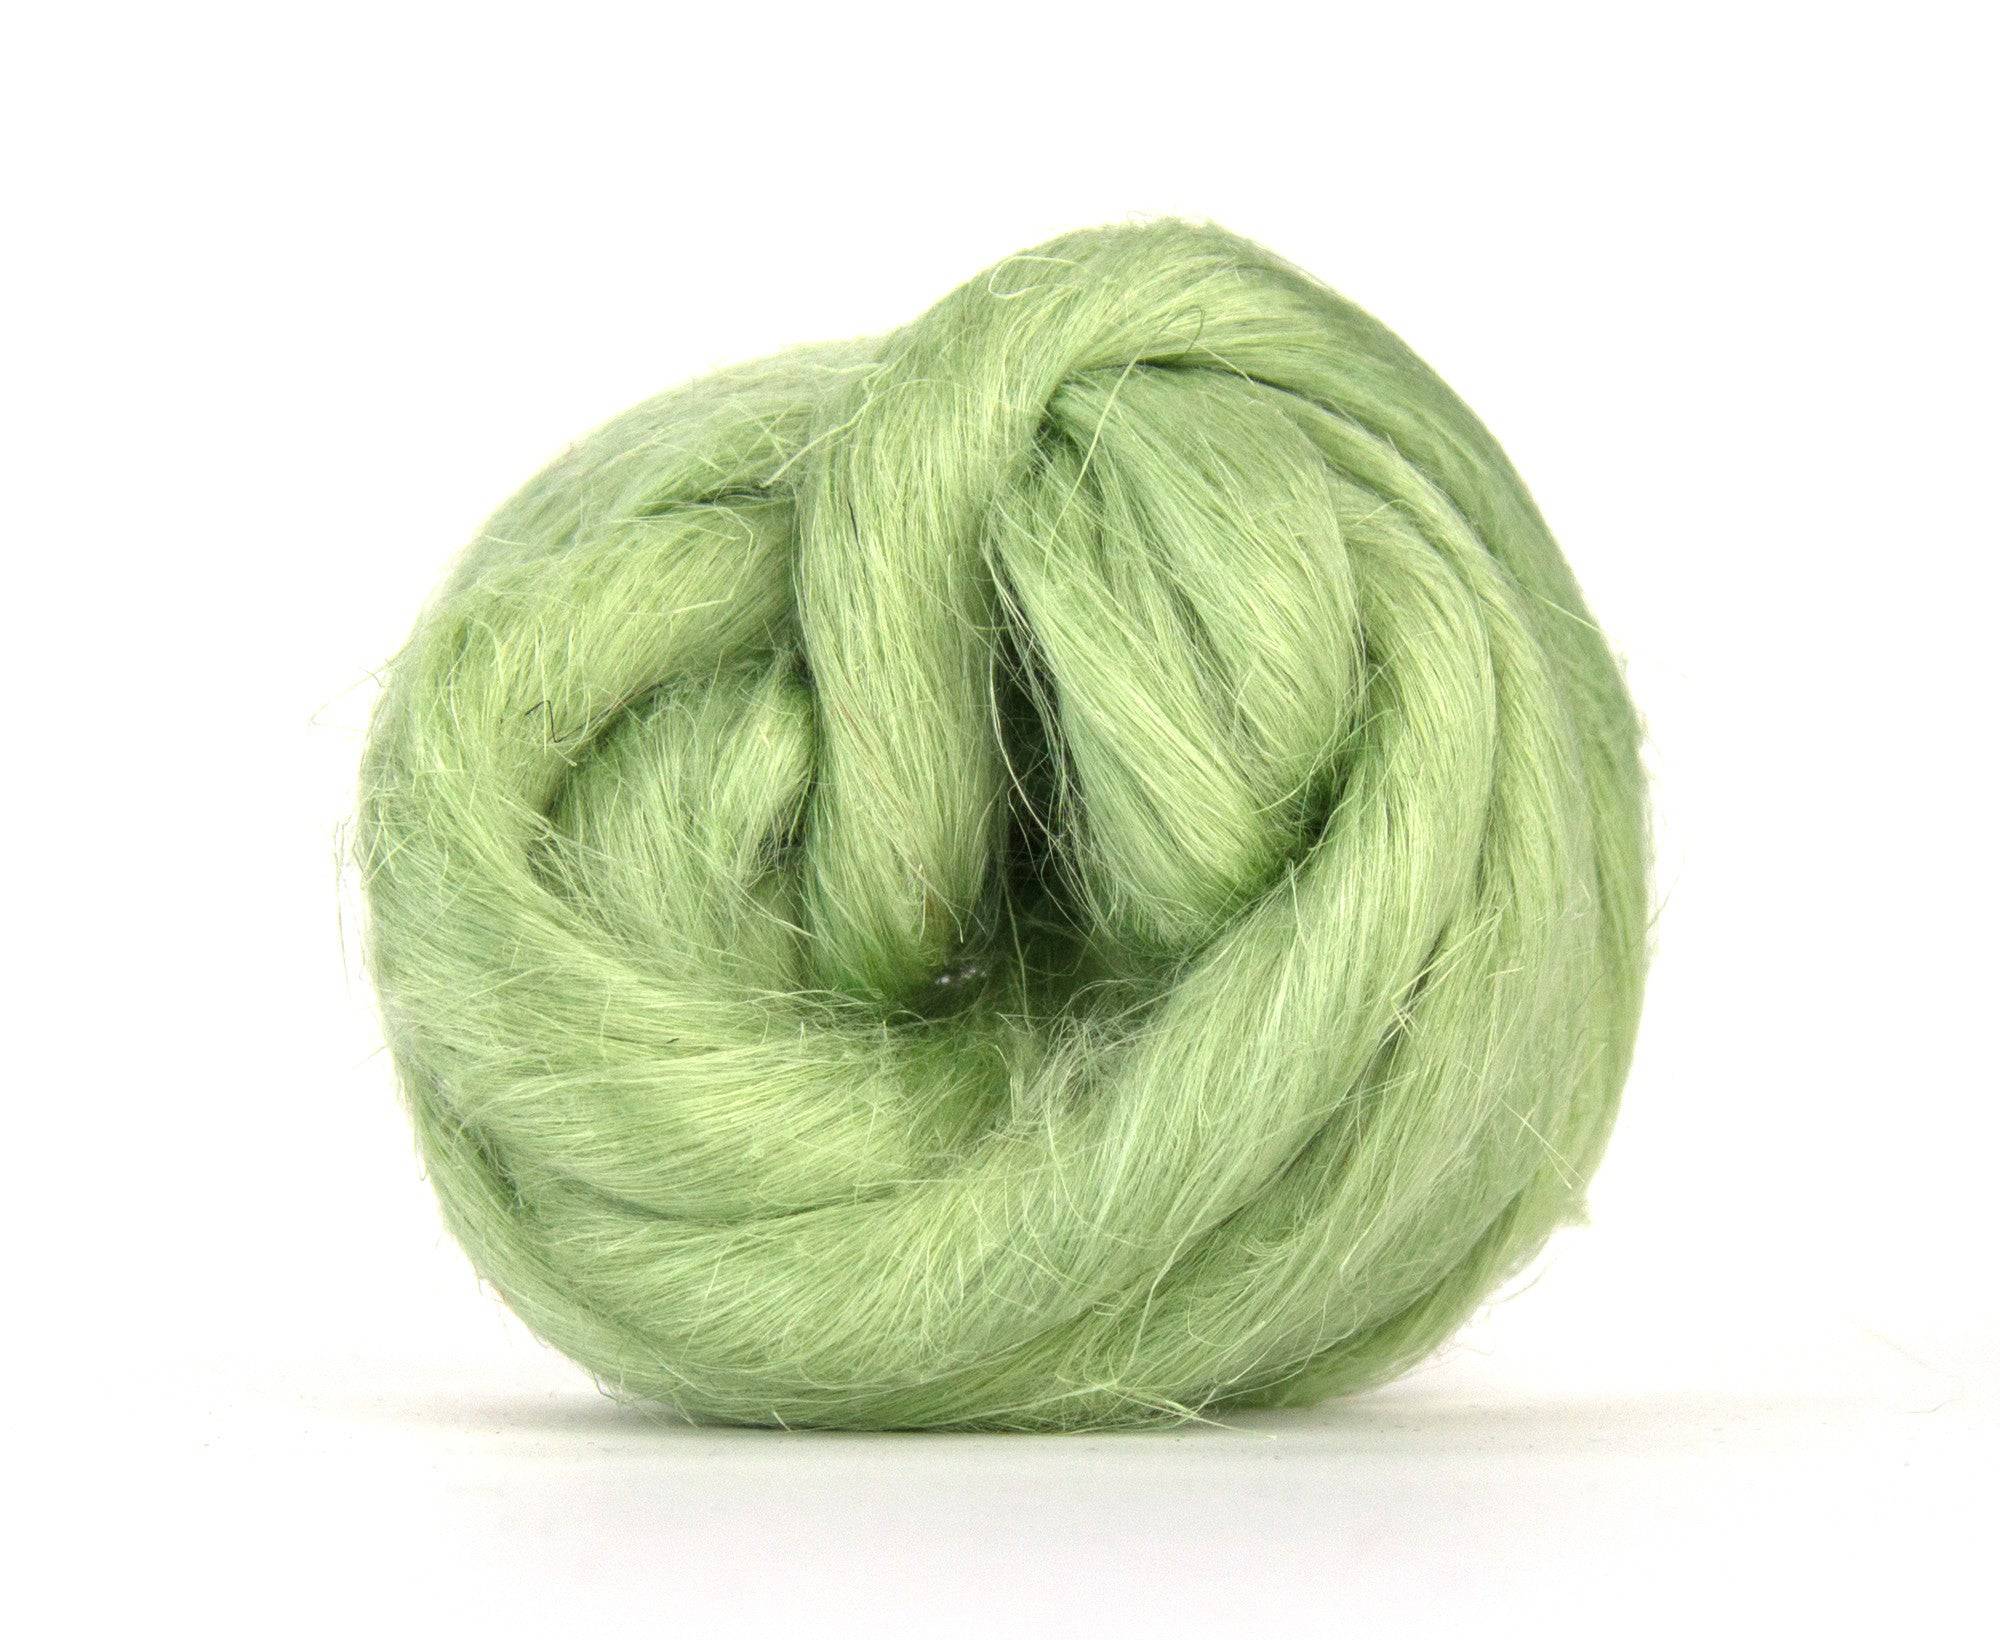 Stem Flax/Linen Top - World of Wool